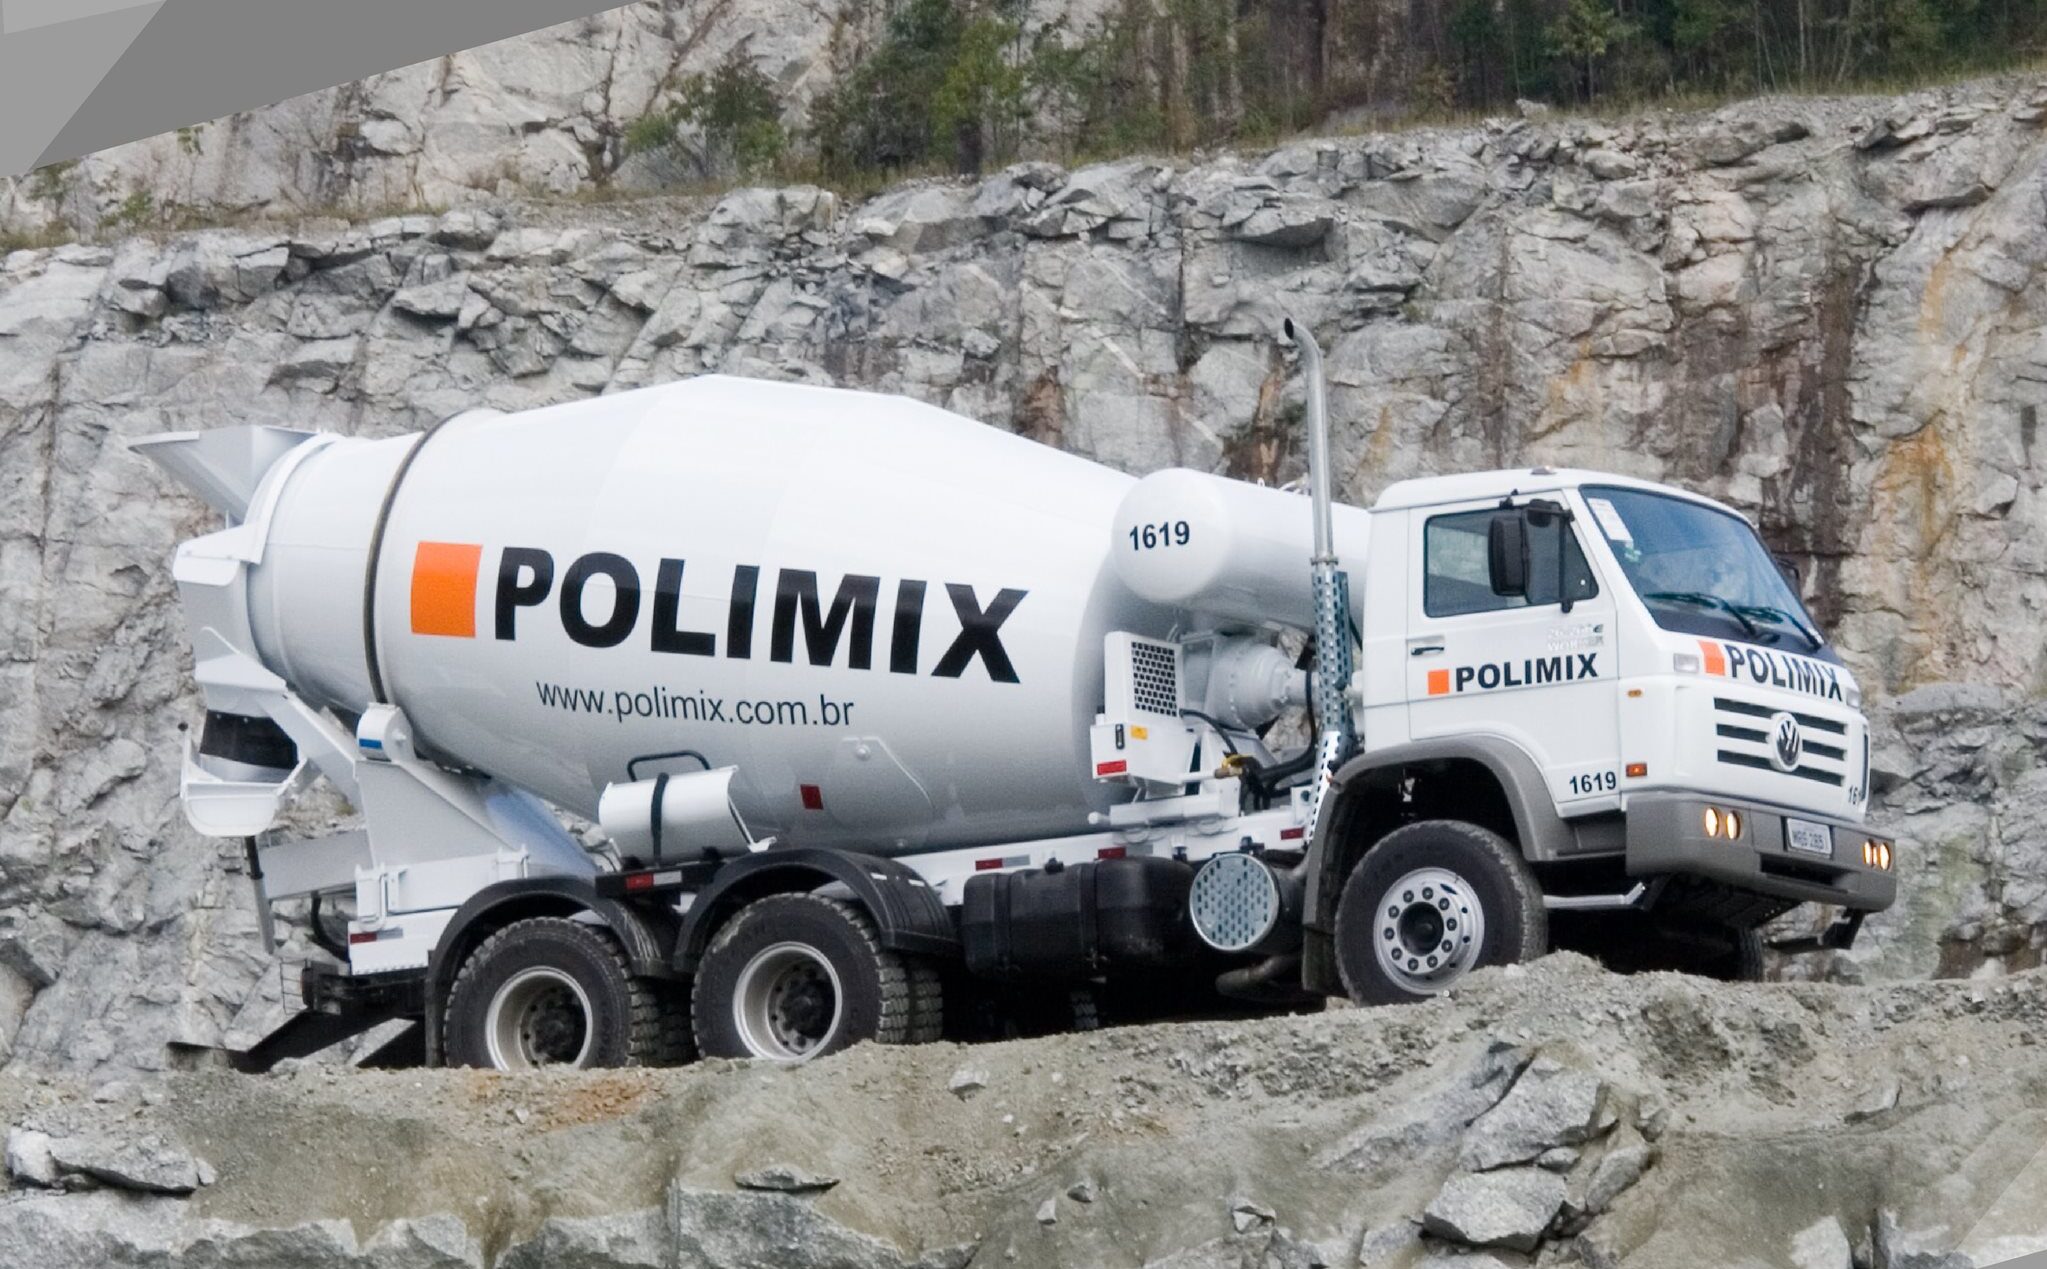 Polimix CONTRATA Motorista, Auxiliar de Produção e mais!